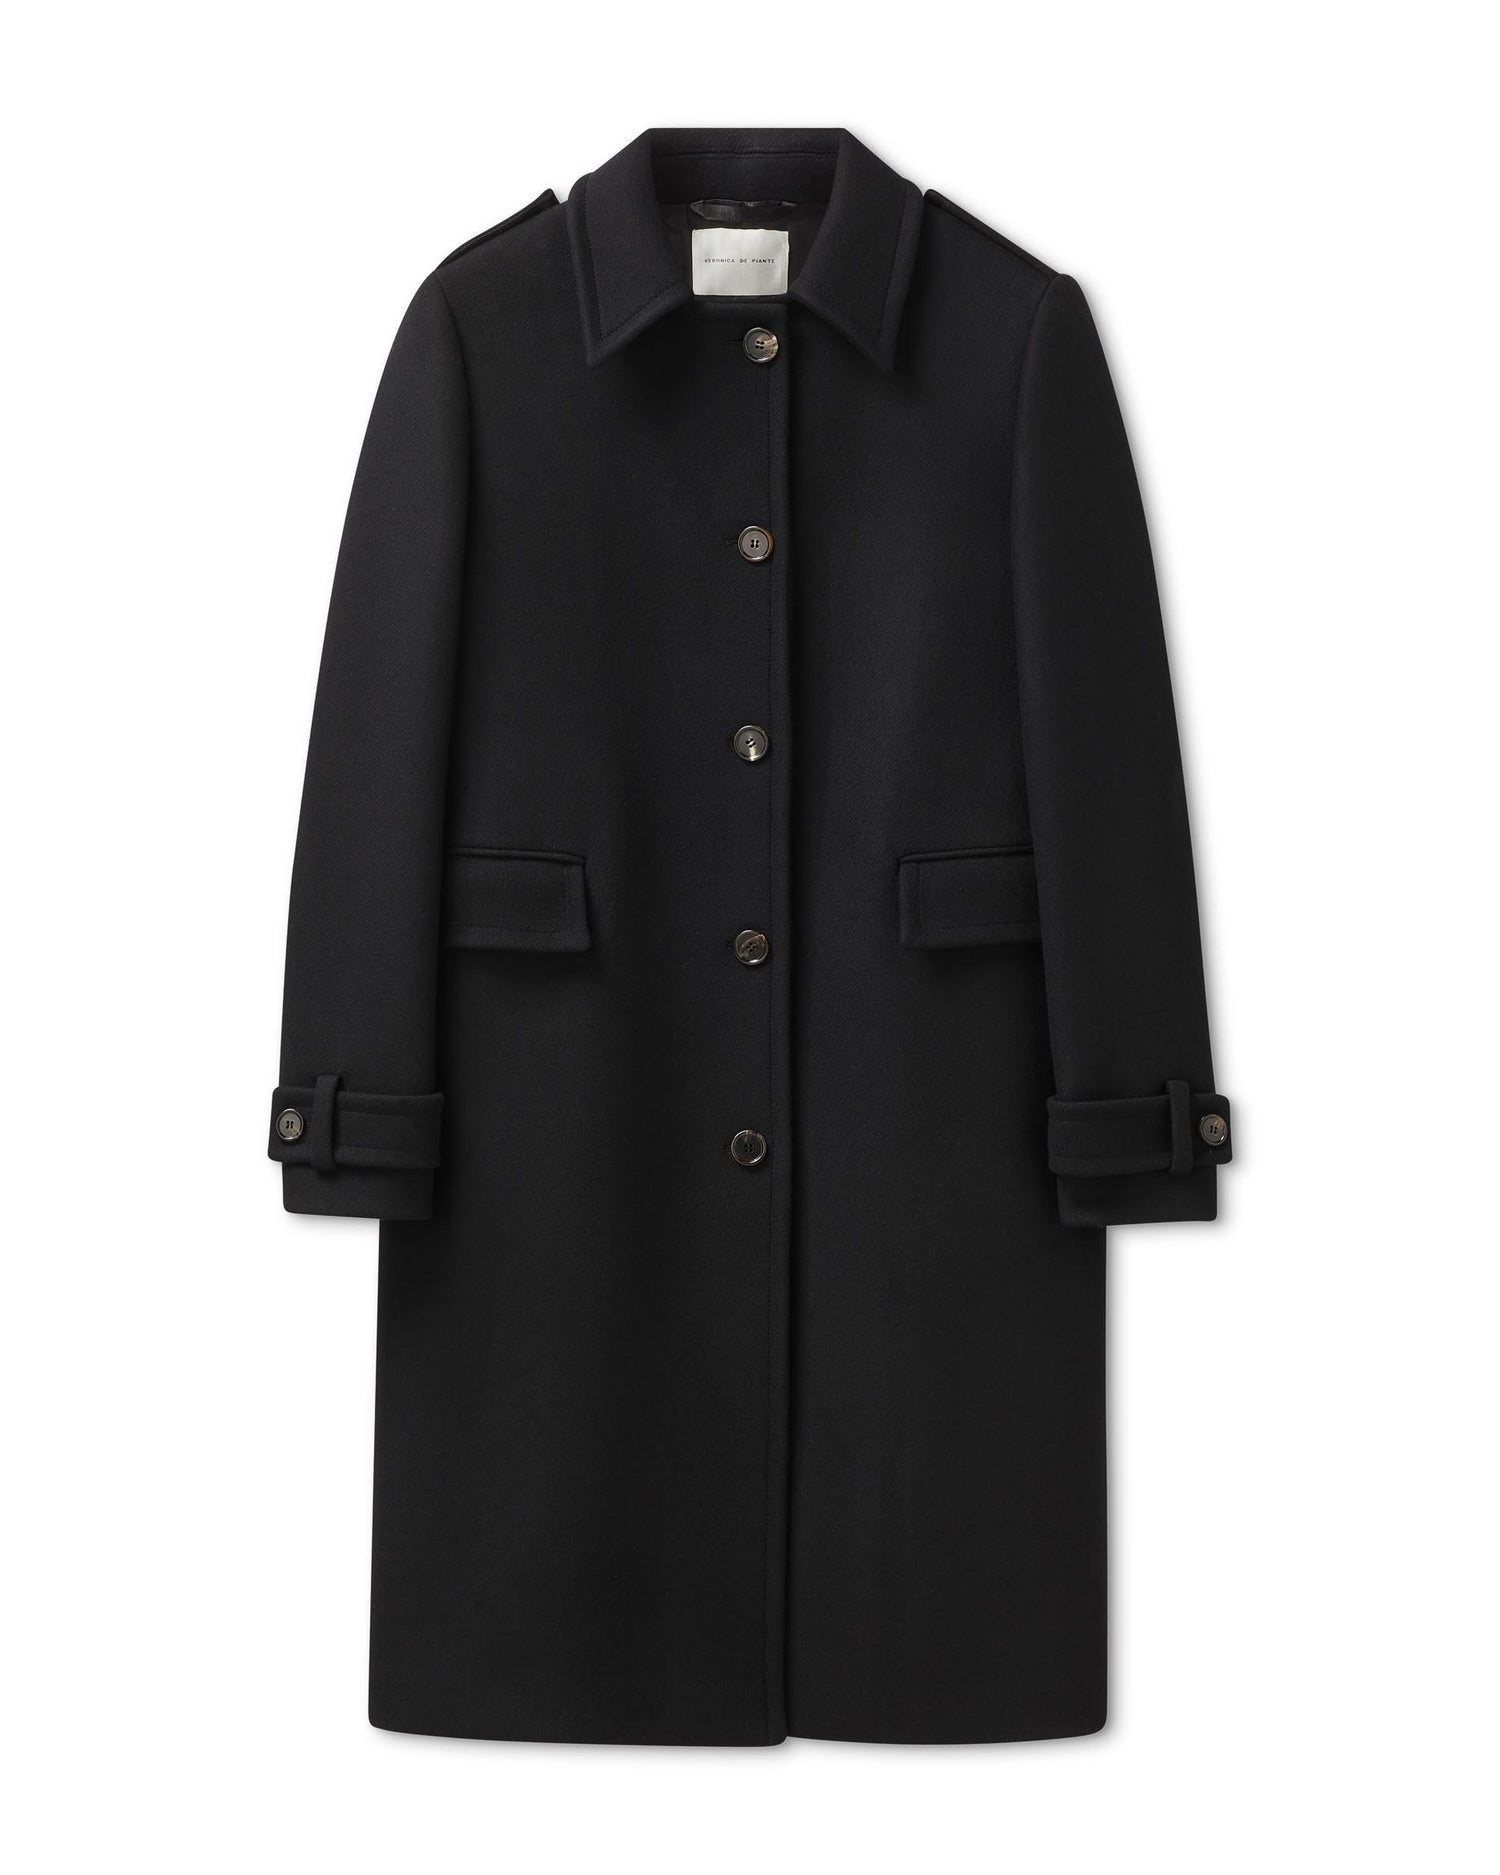 Alex Coat in Melton Wool, Black